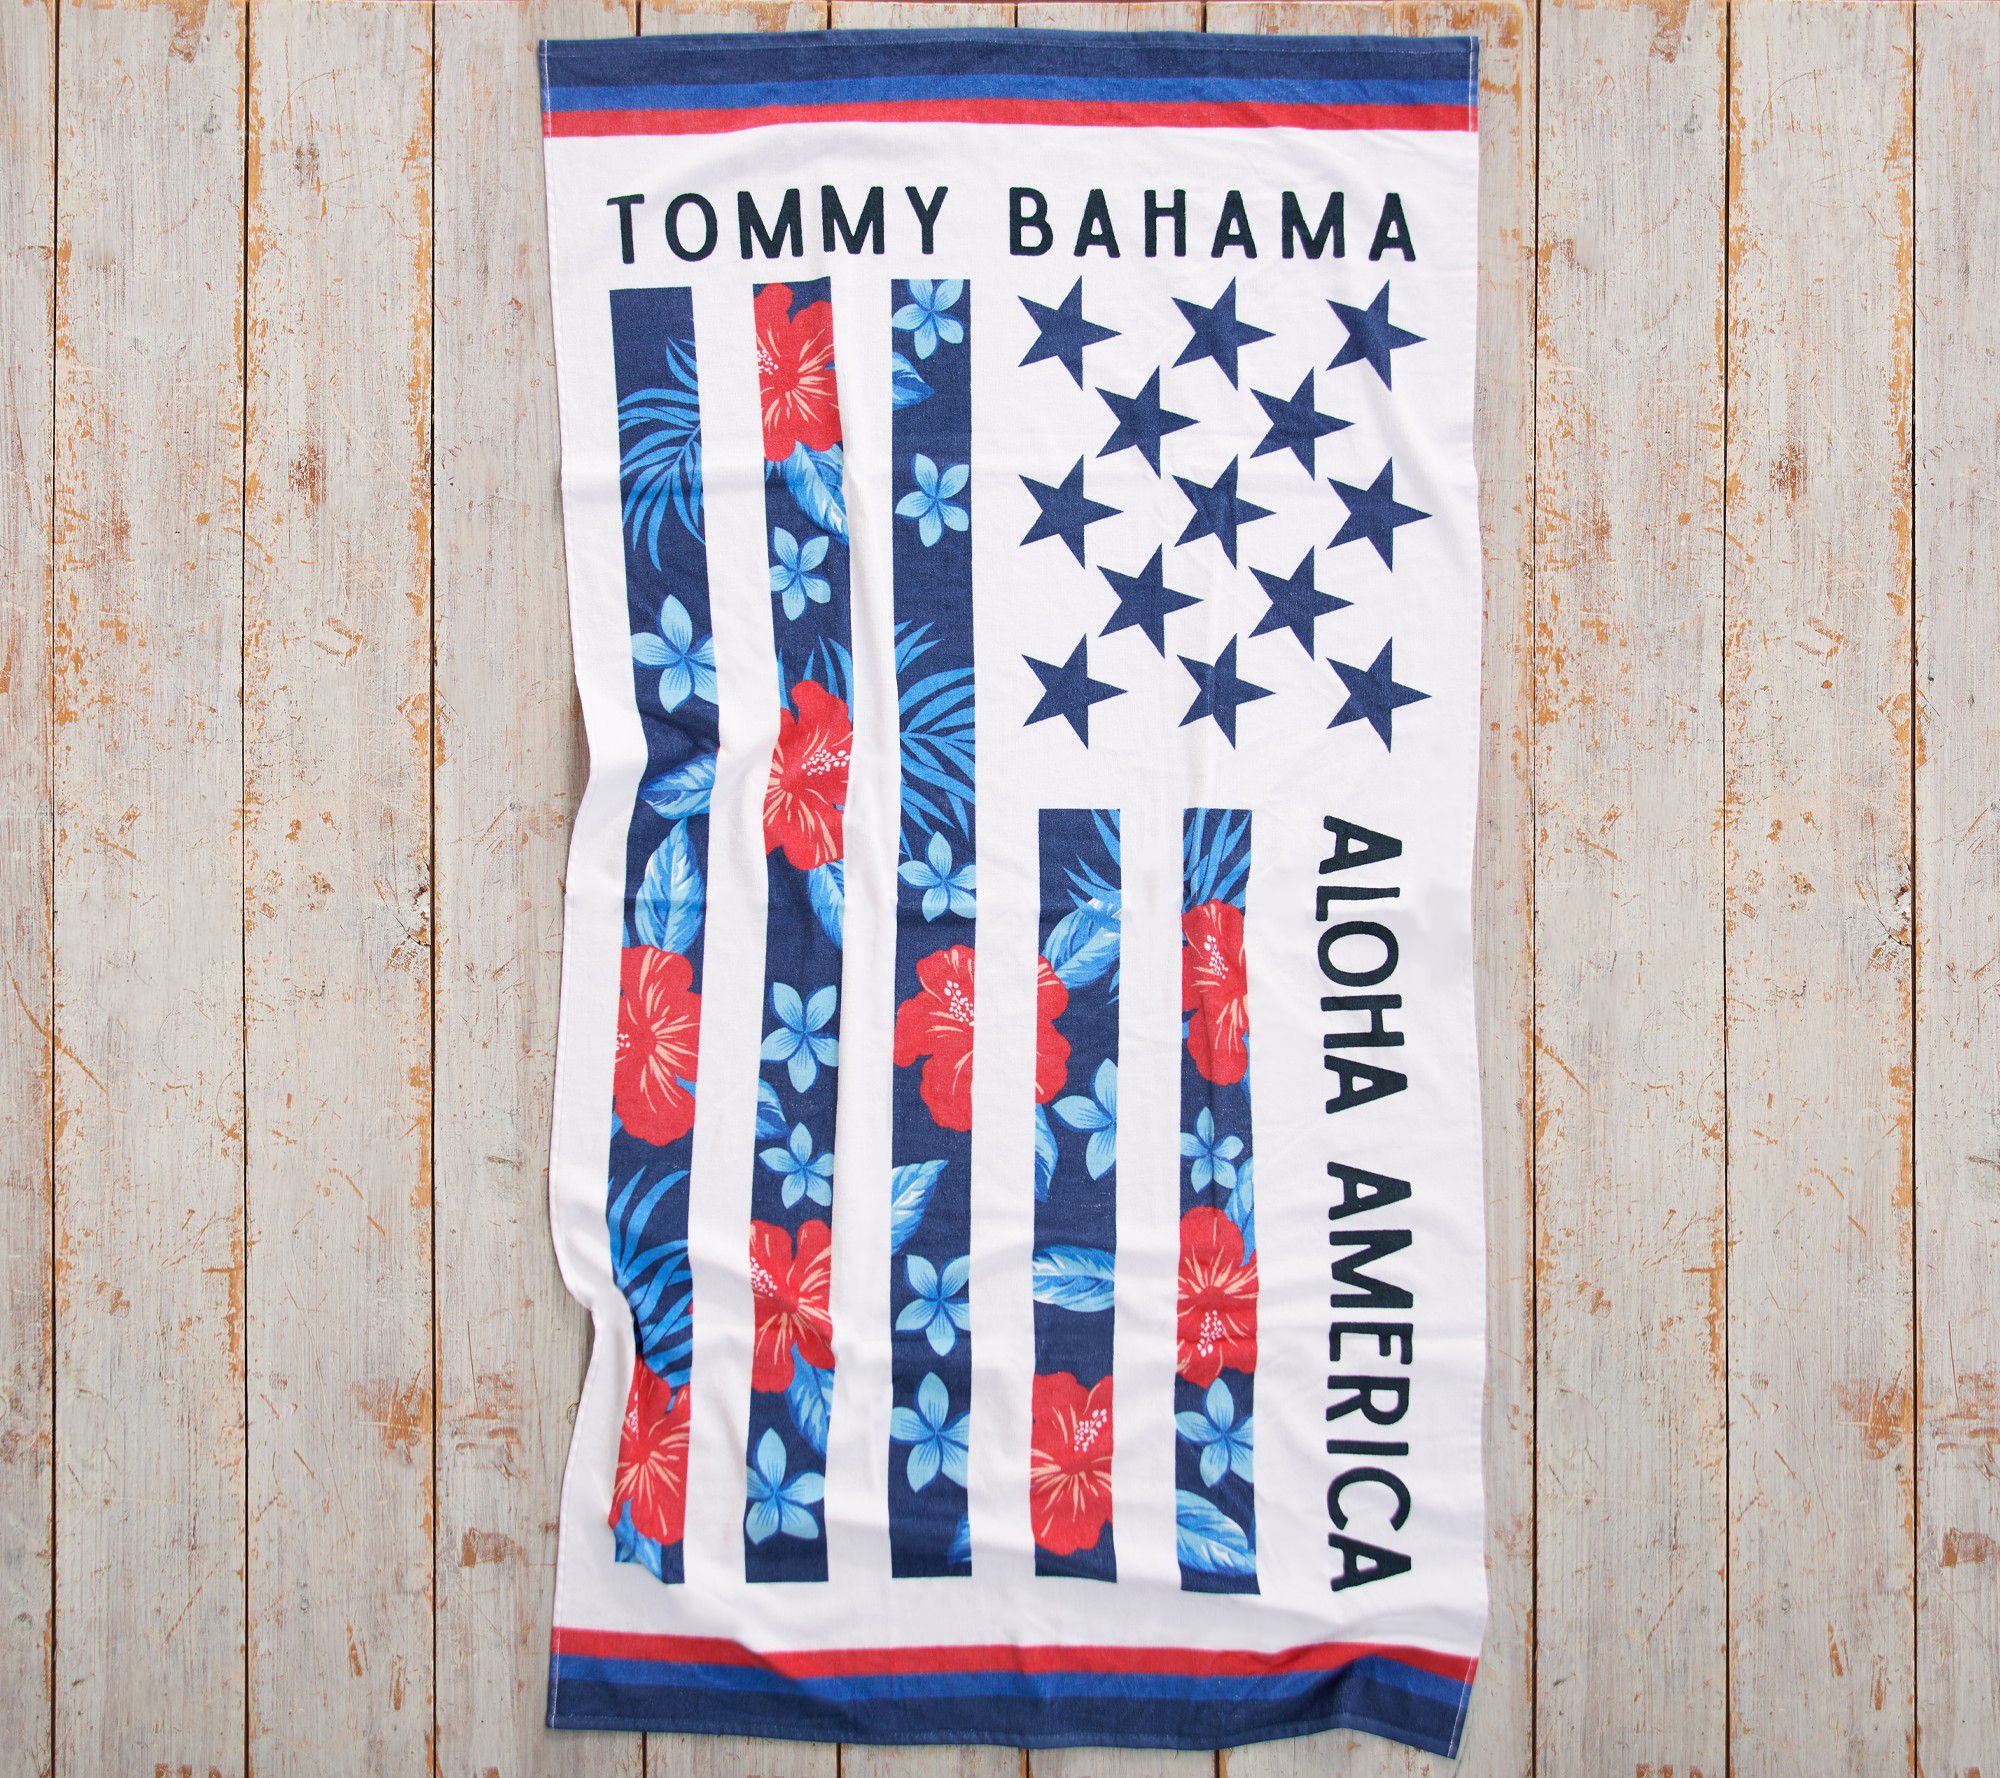 tommy bahama towel set - 8pc - tommy bahama towels